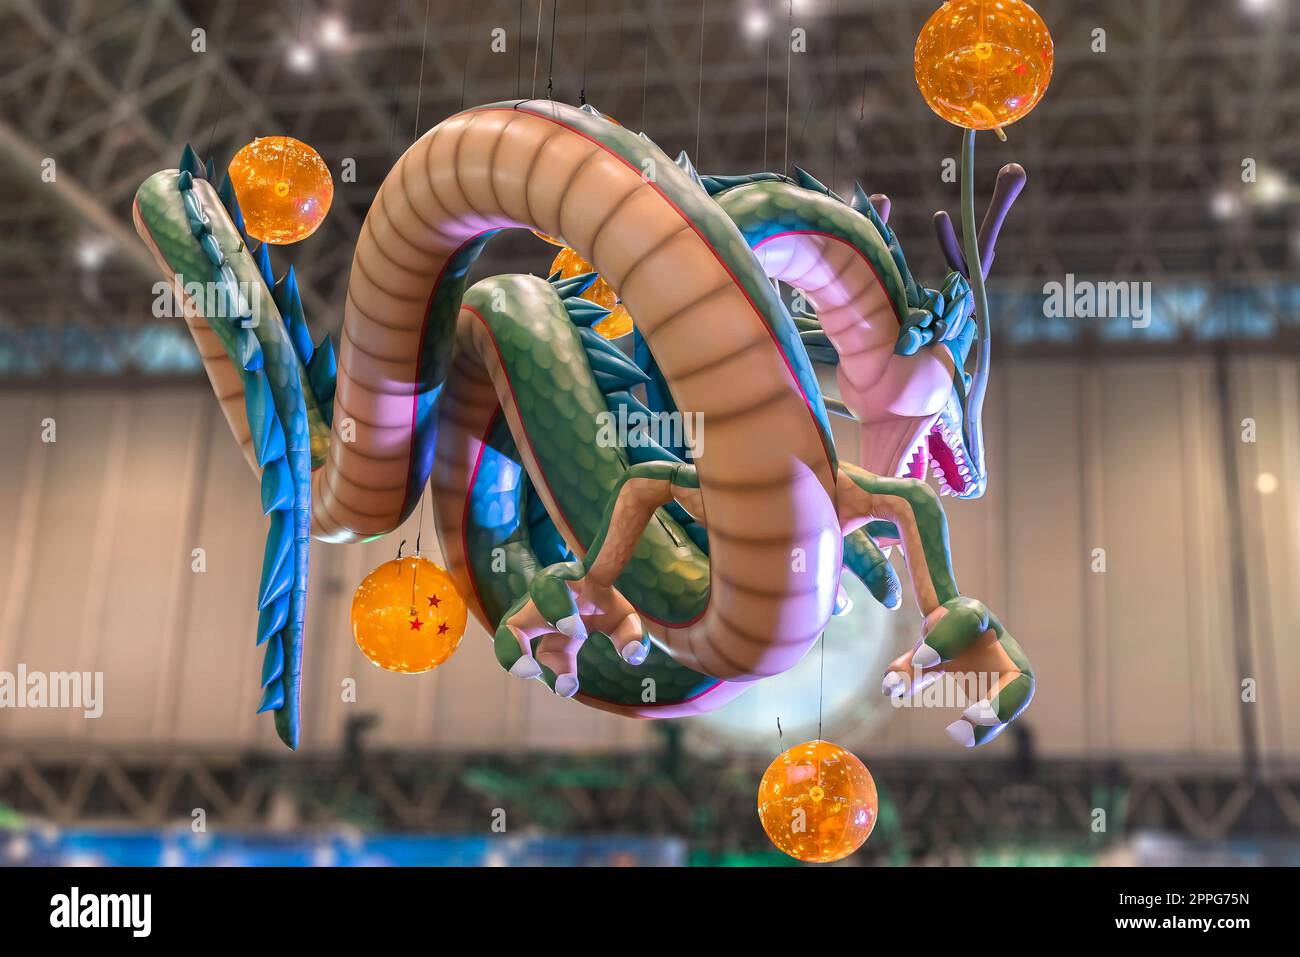 chiba, giappone - 22 dicembre 2018: Enorme struttura gonfiabile raffigurante il drago Shenron della serie anime e manga di Dragon Ball che galleggia sotto il soffitto della convention anime Jump Festa 19. Foto Stock